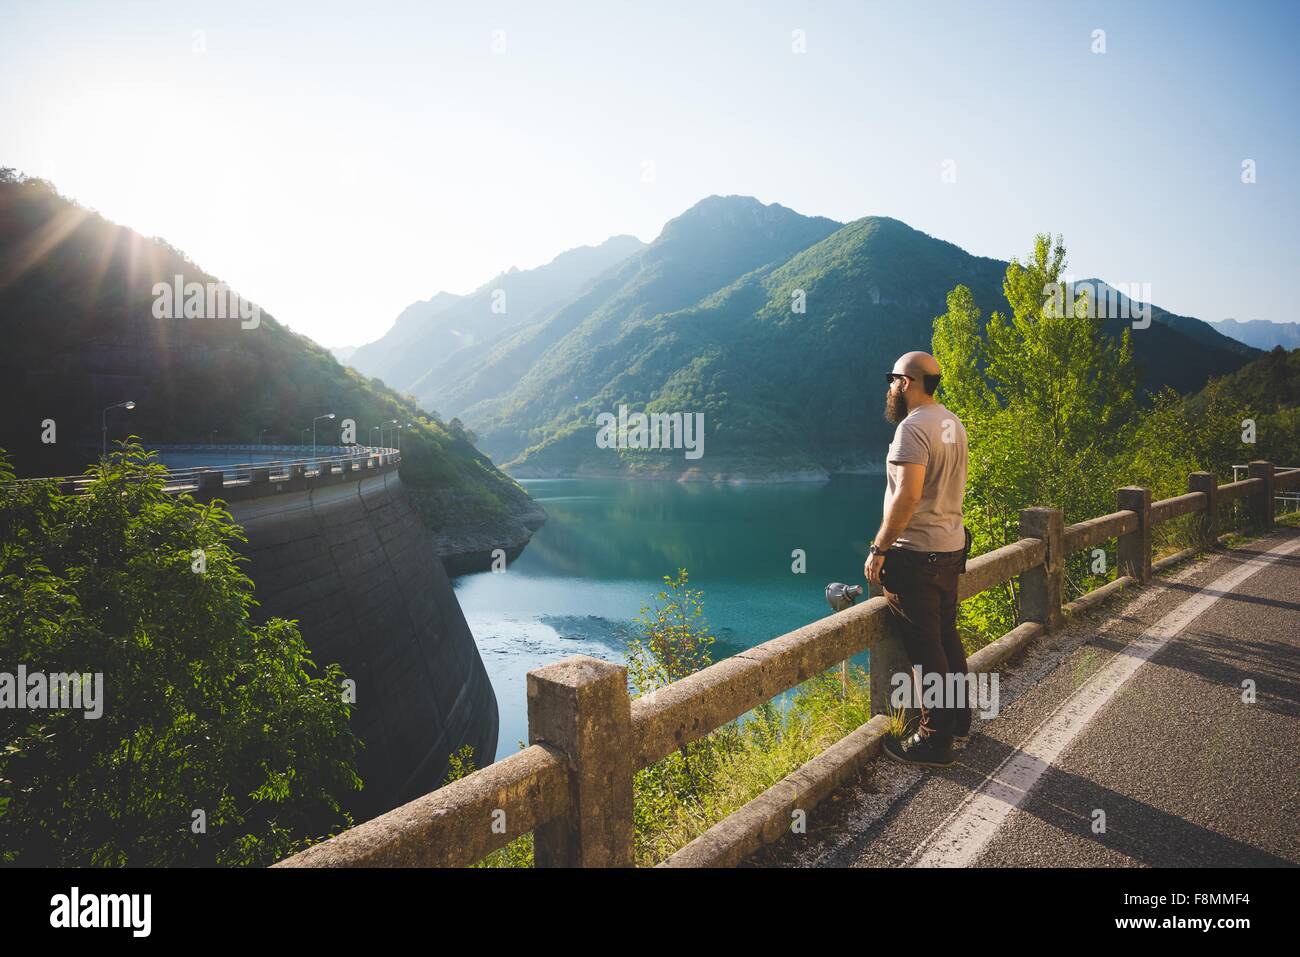 Man enjoying view of Lake Garda, Italy Stock Photo